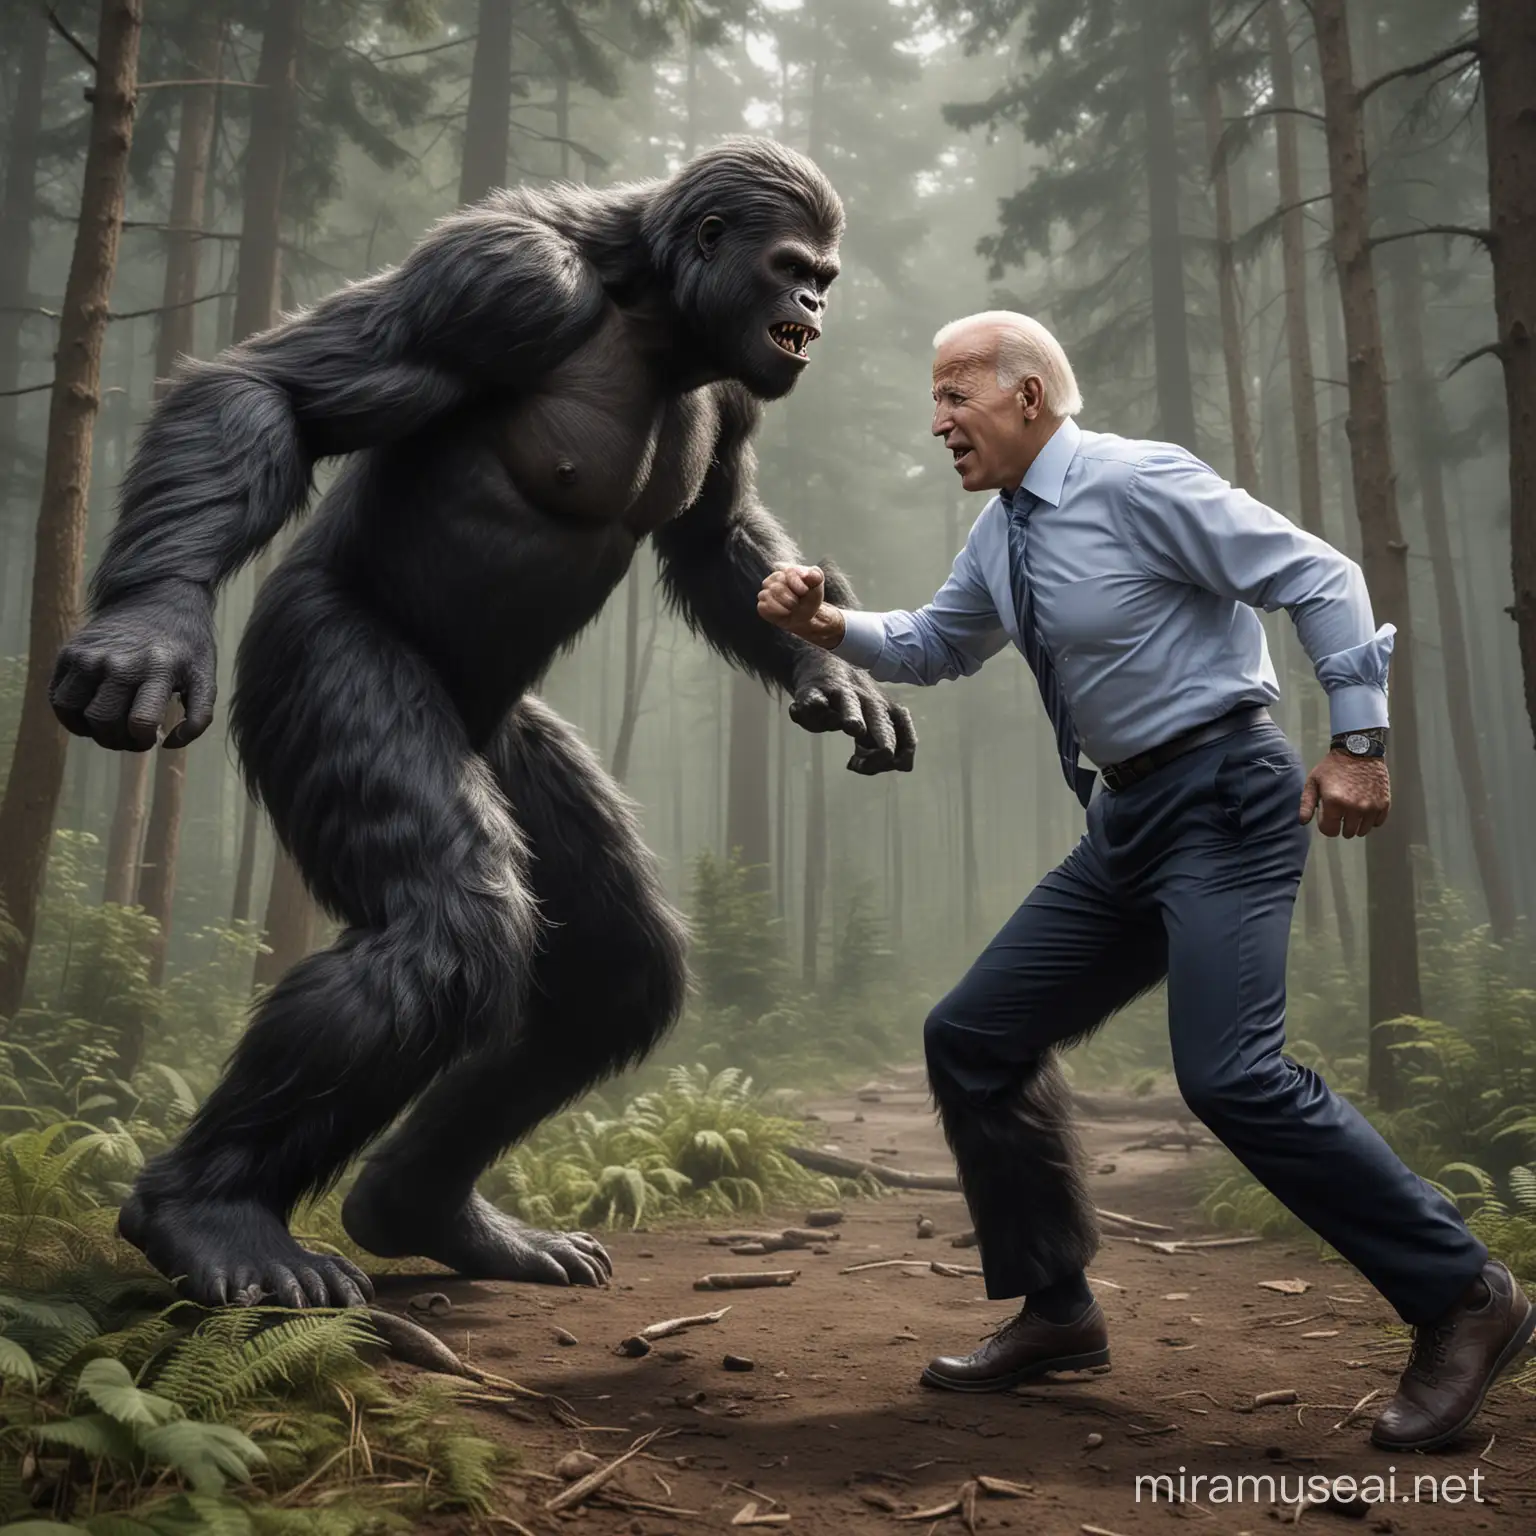 Joe Biden Battles Bigfoot Epic Photorealistic Showdown